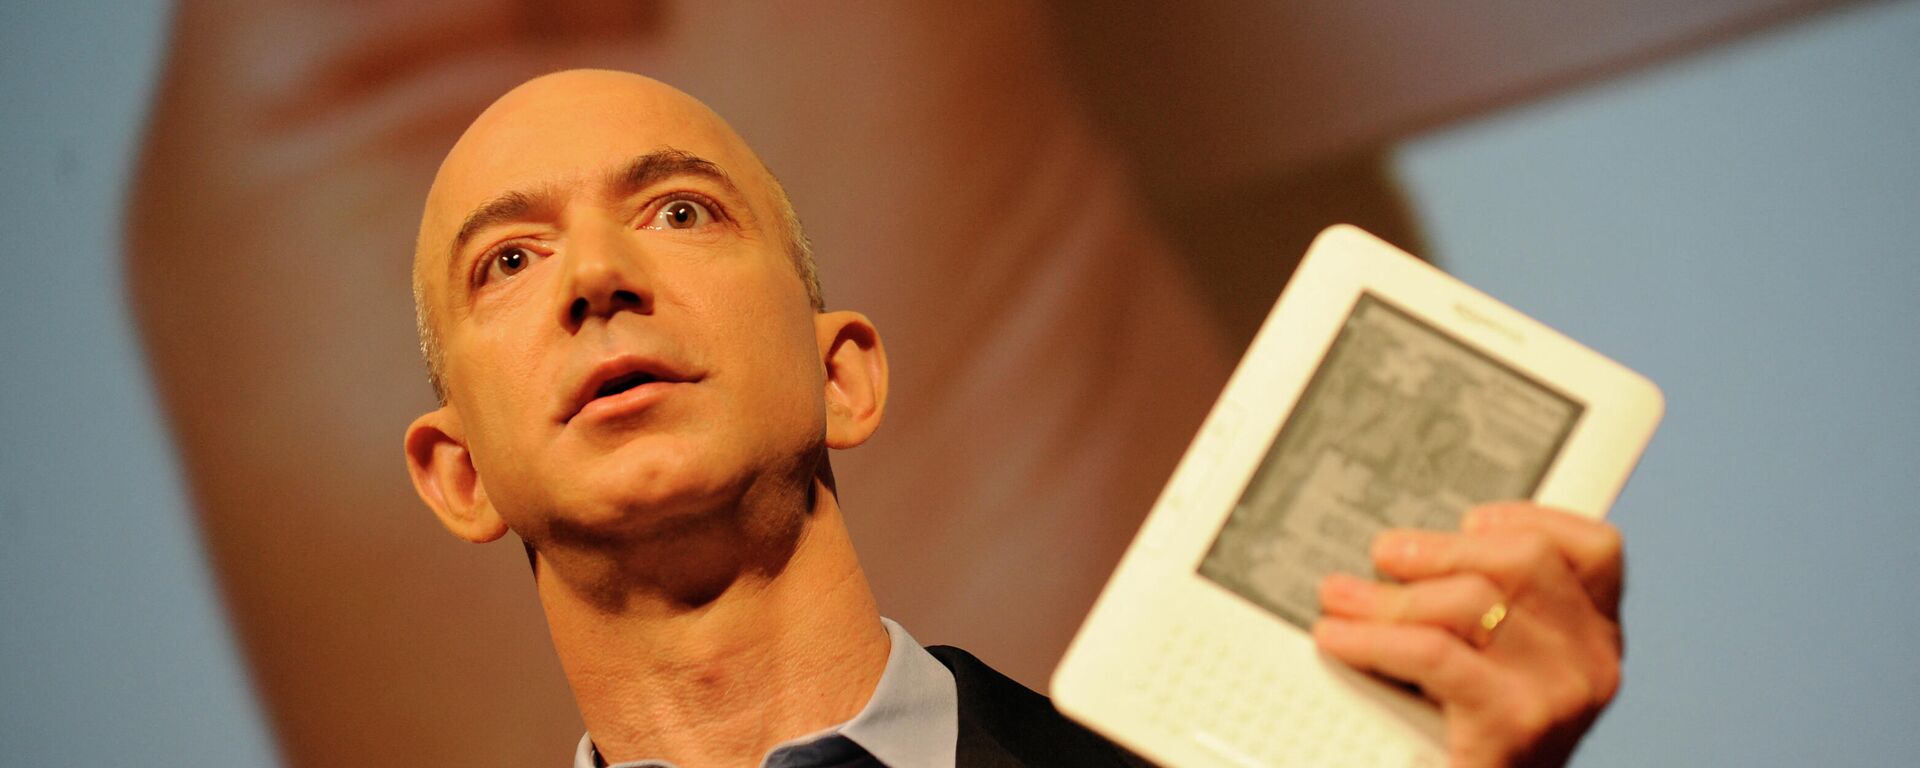 Jeff Bezos sujeta un libro electrónico Amazon Kindle, foto de archivo - Sputnik Mundo, 1920, 28.08.2021